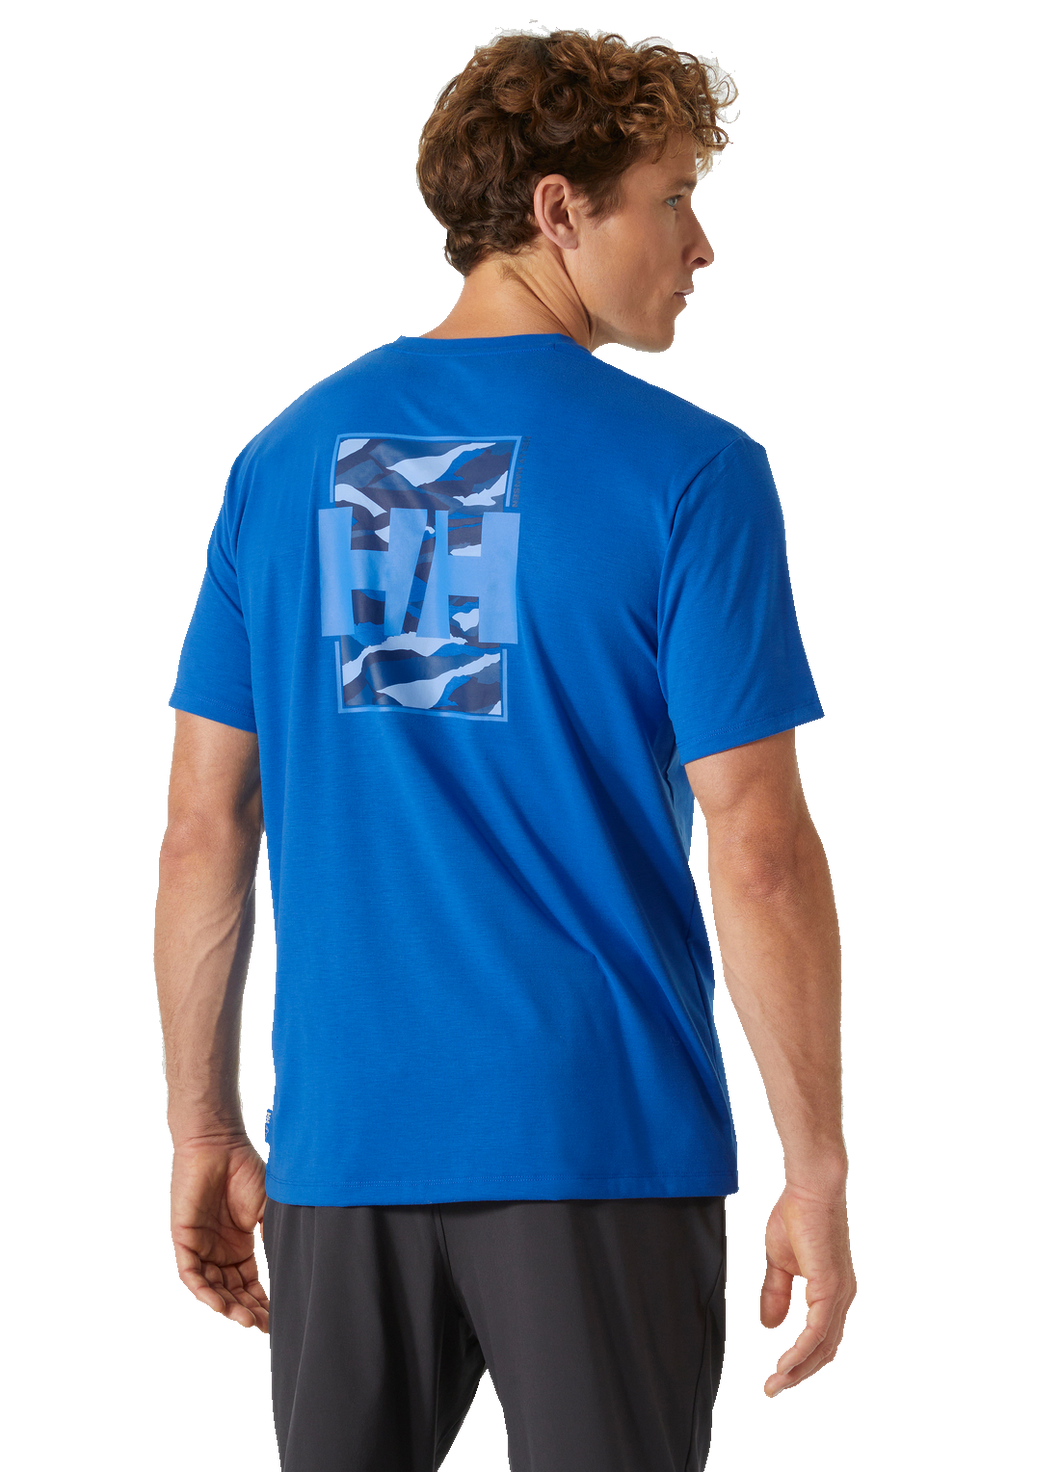 Helly Hansen Men's Skog Recycled Graphic T-Shirt (Cobalt 2.0)